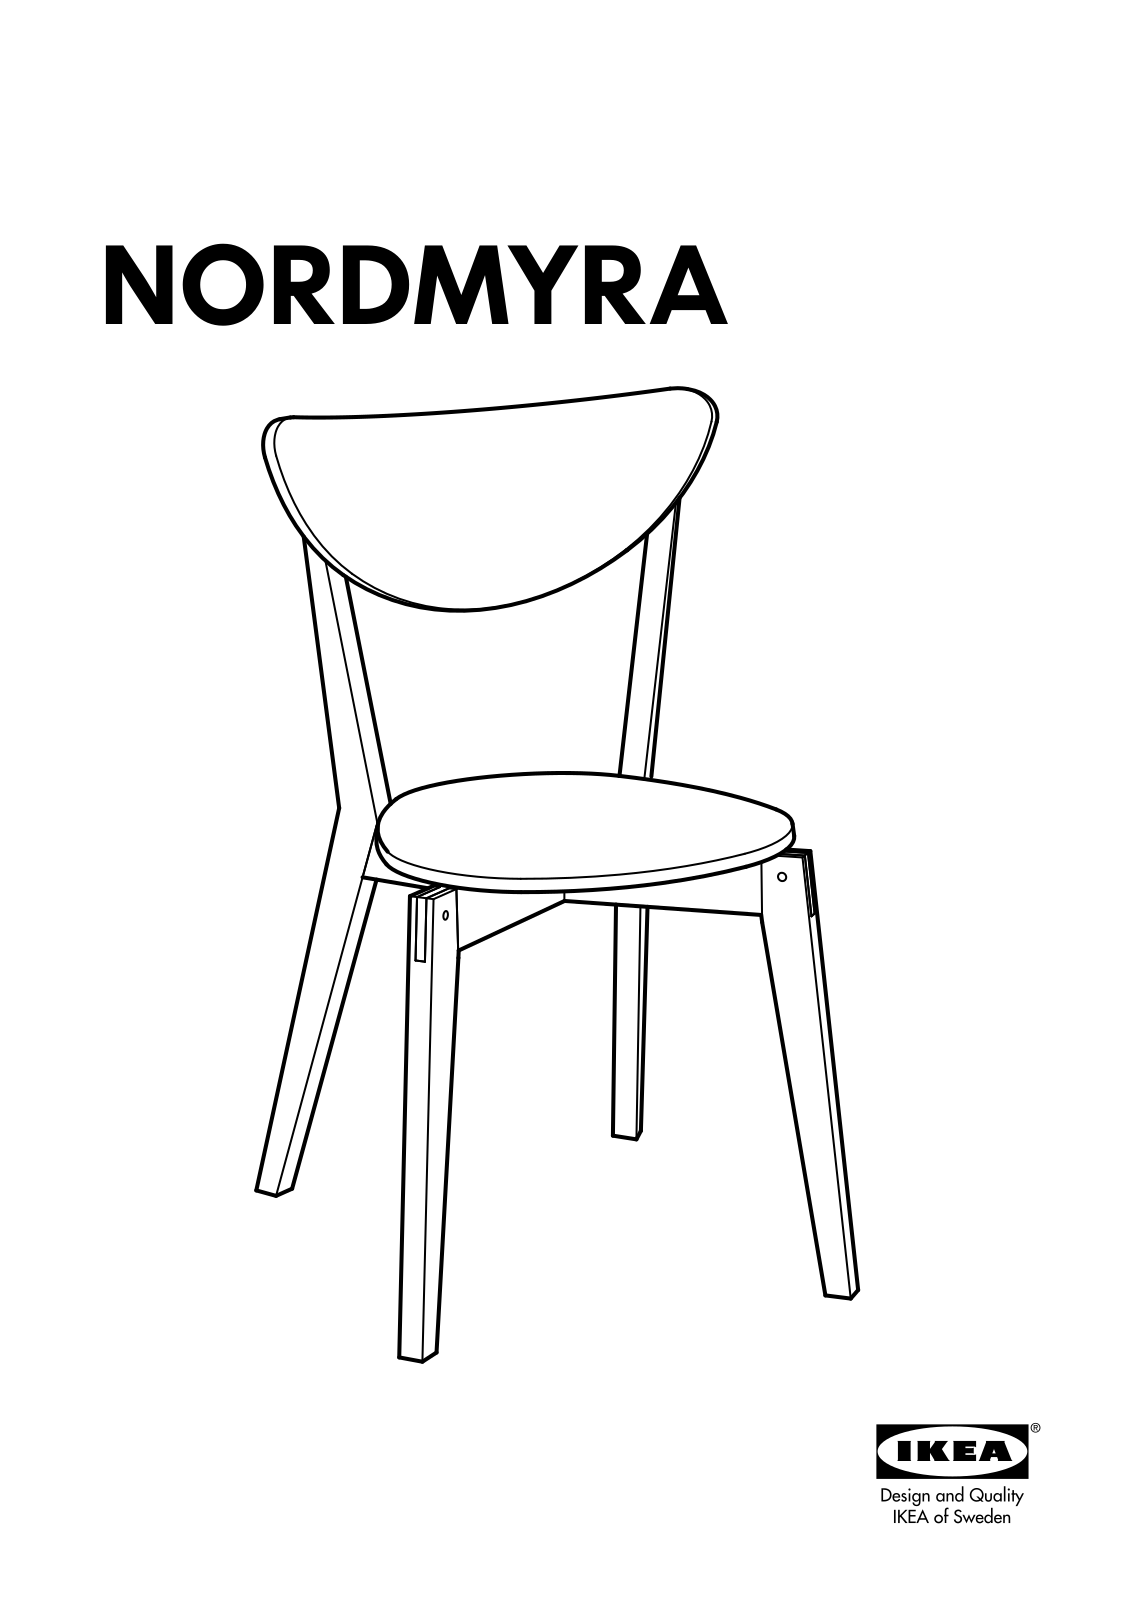 IKEA NORDMYRA User Manual